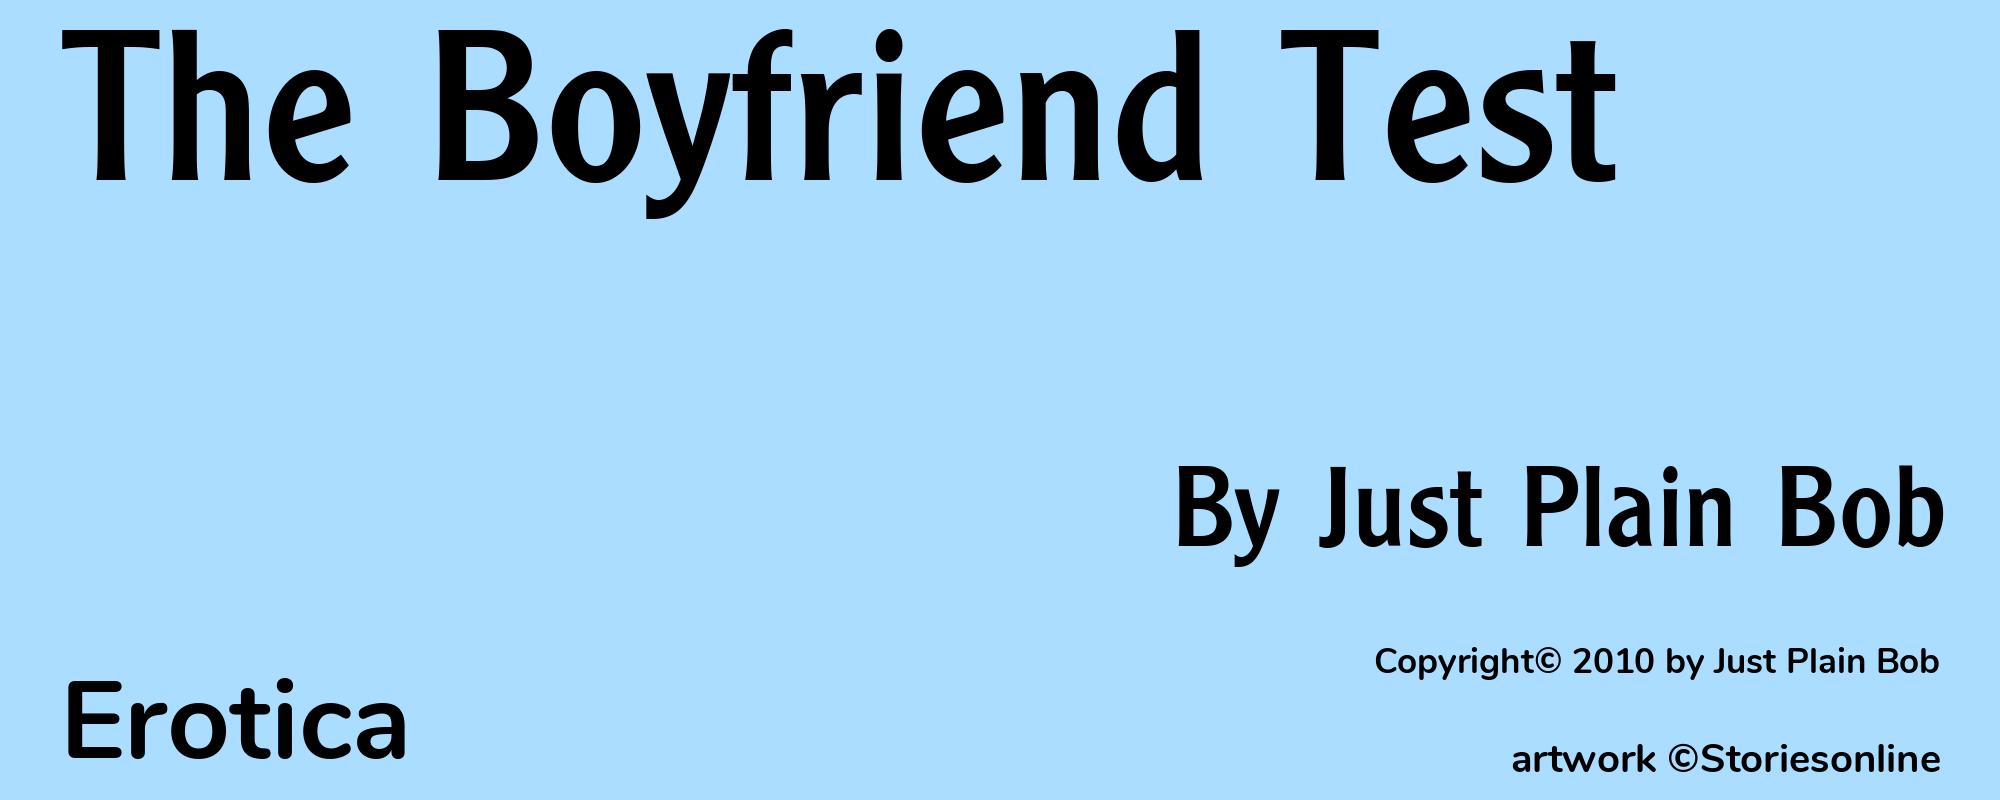 The Boyfriend Test - Cover